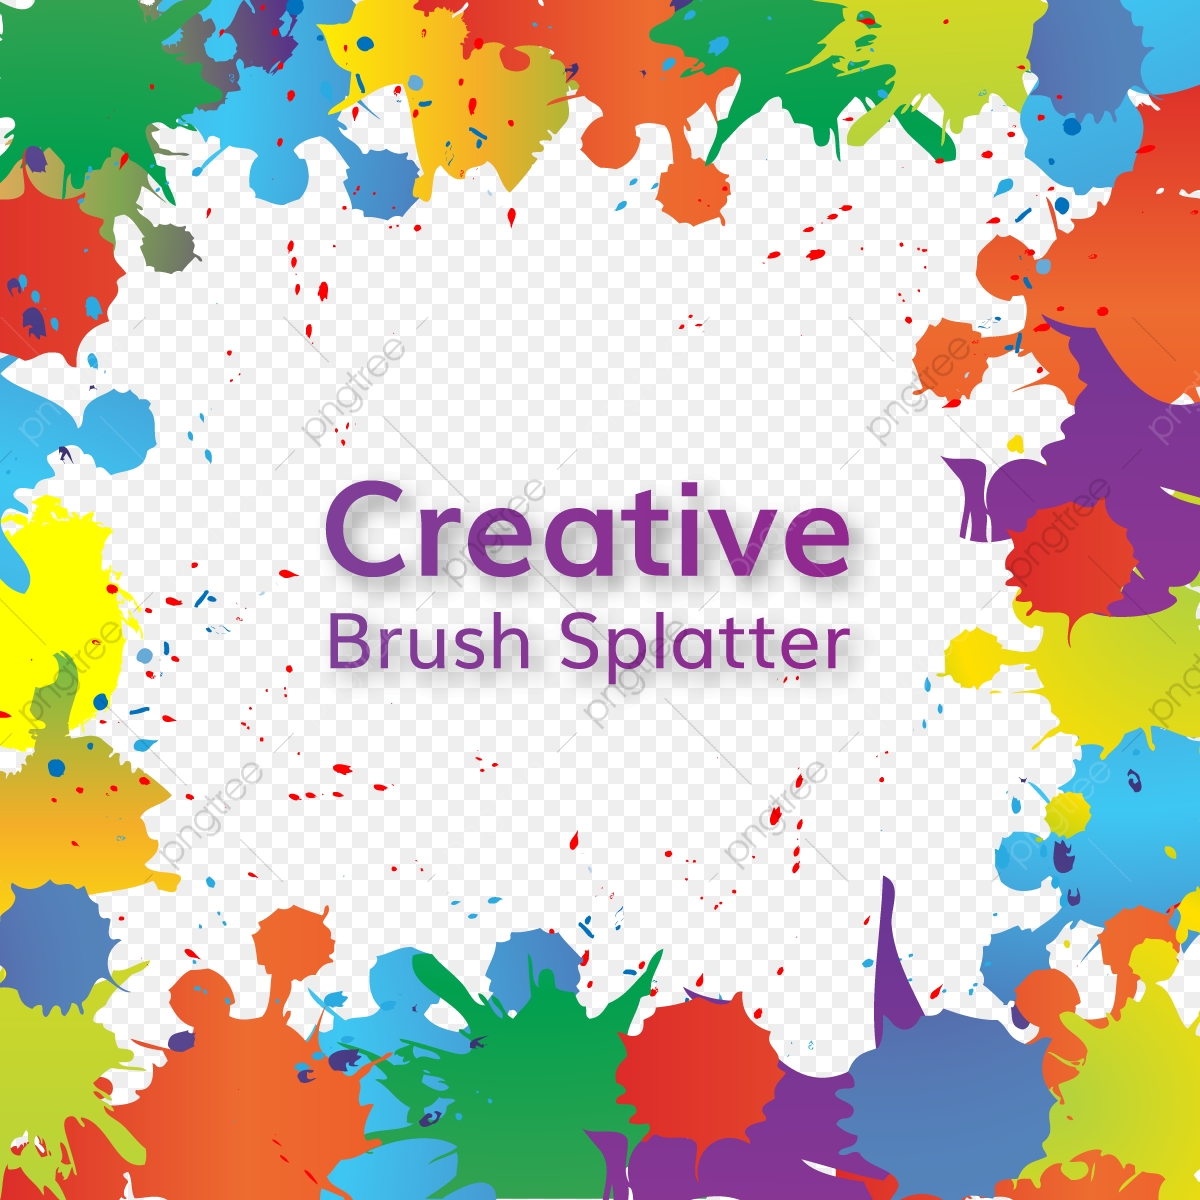 Paint Splatter Vector Free Download 6 